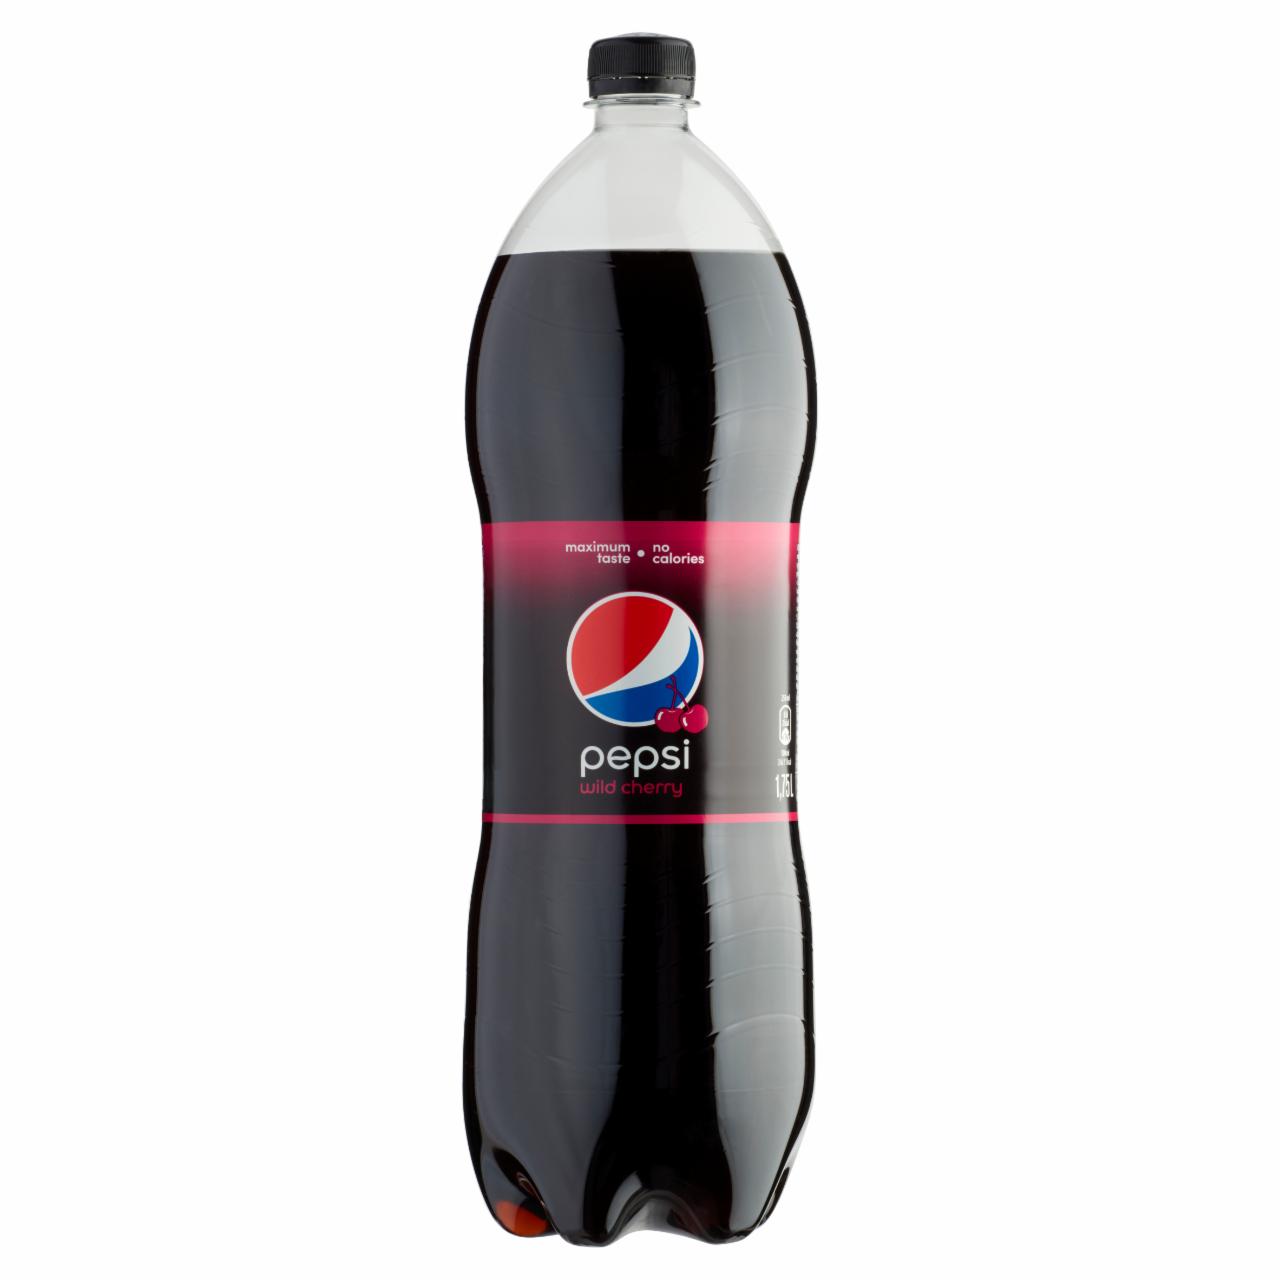 Képek - Pepsi Wild Cherry colaízű energiamentes szénsavas üdítőital édesítőszerrel, meggy ízesítéssel 1,75 l